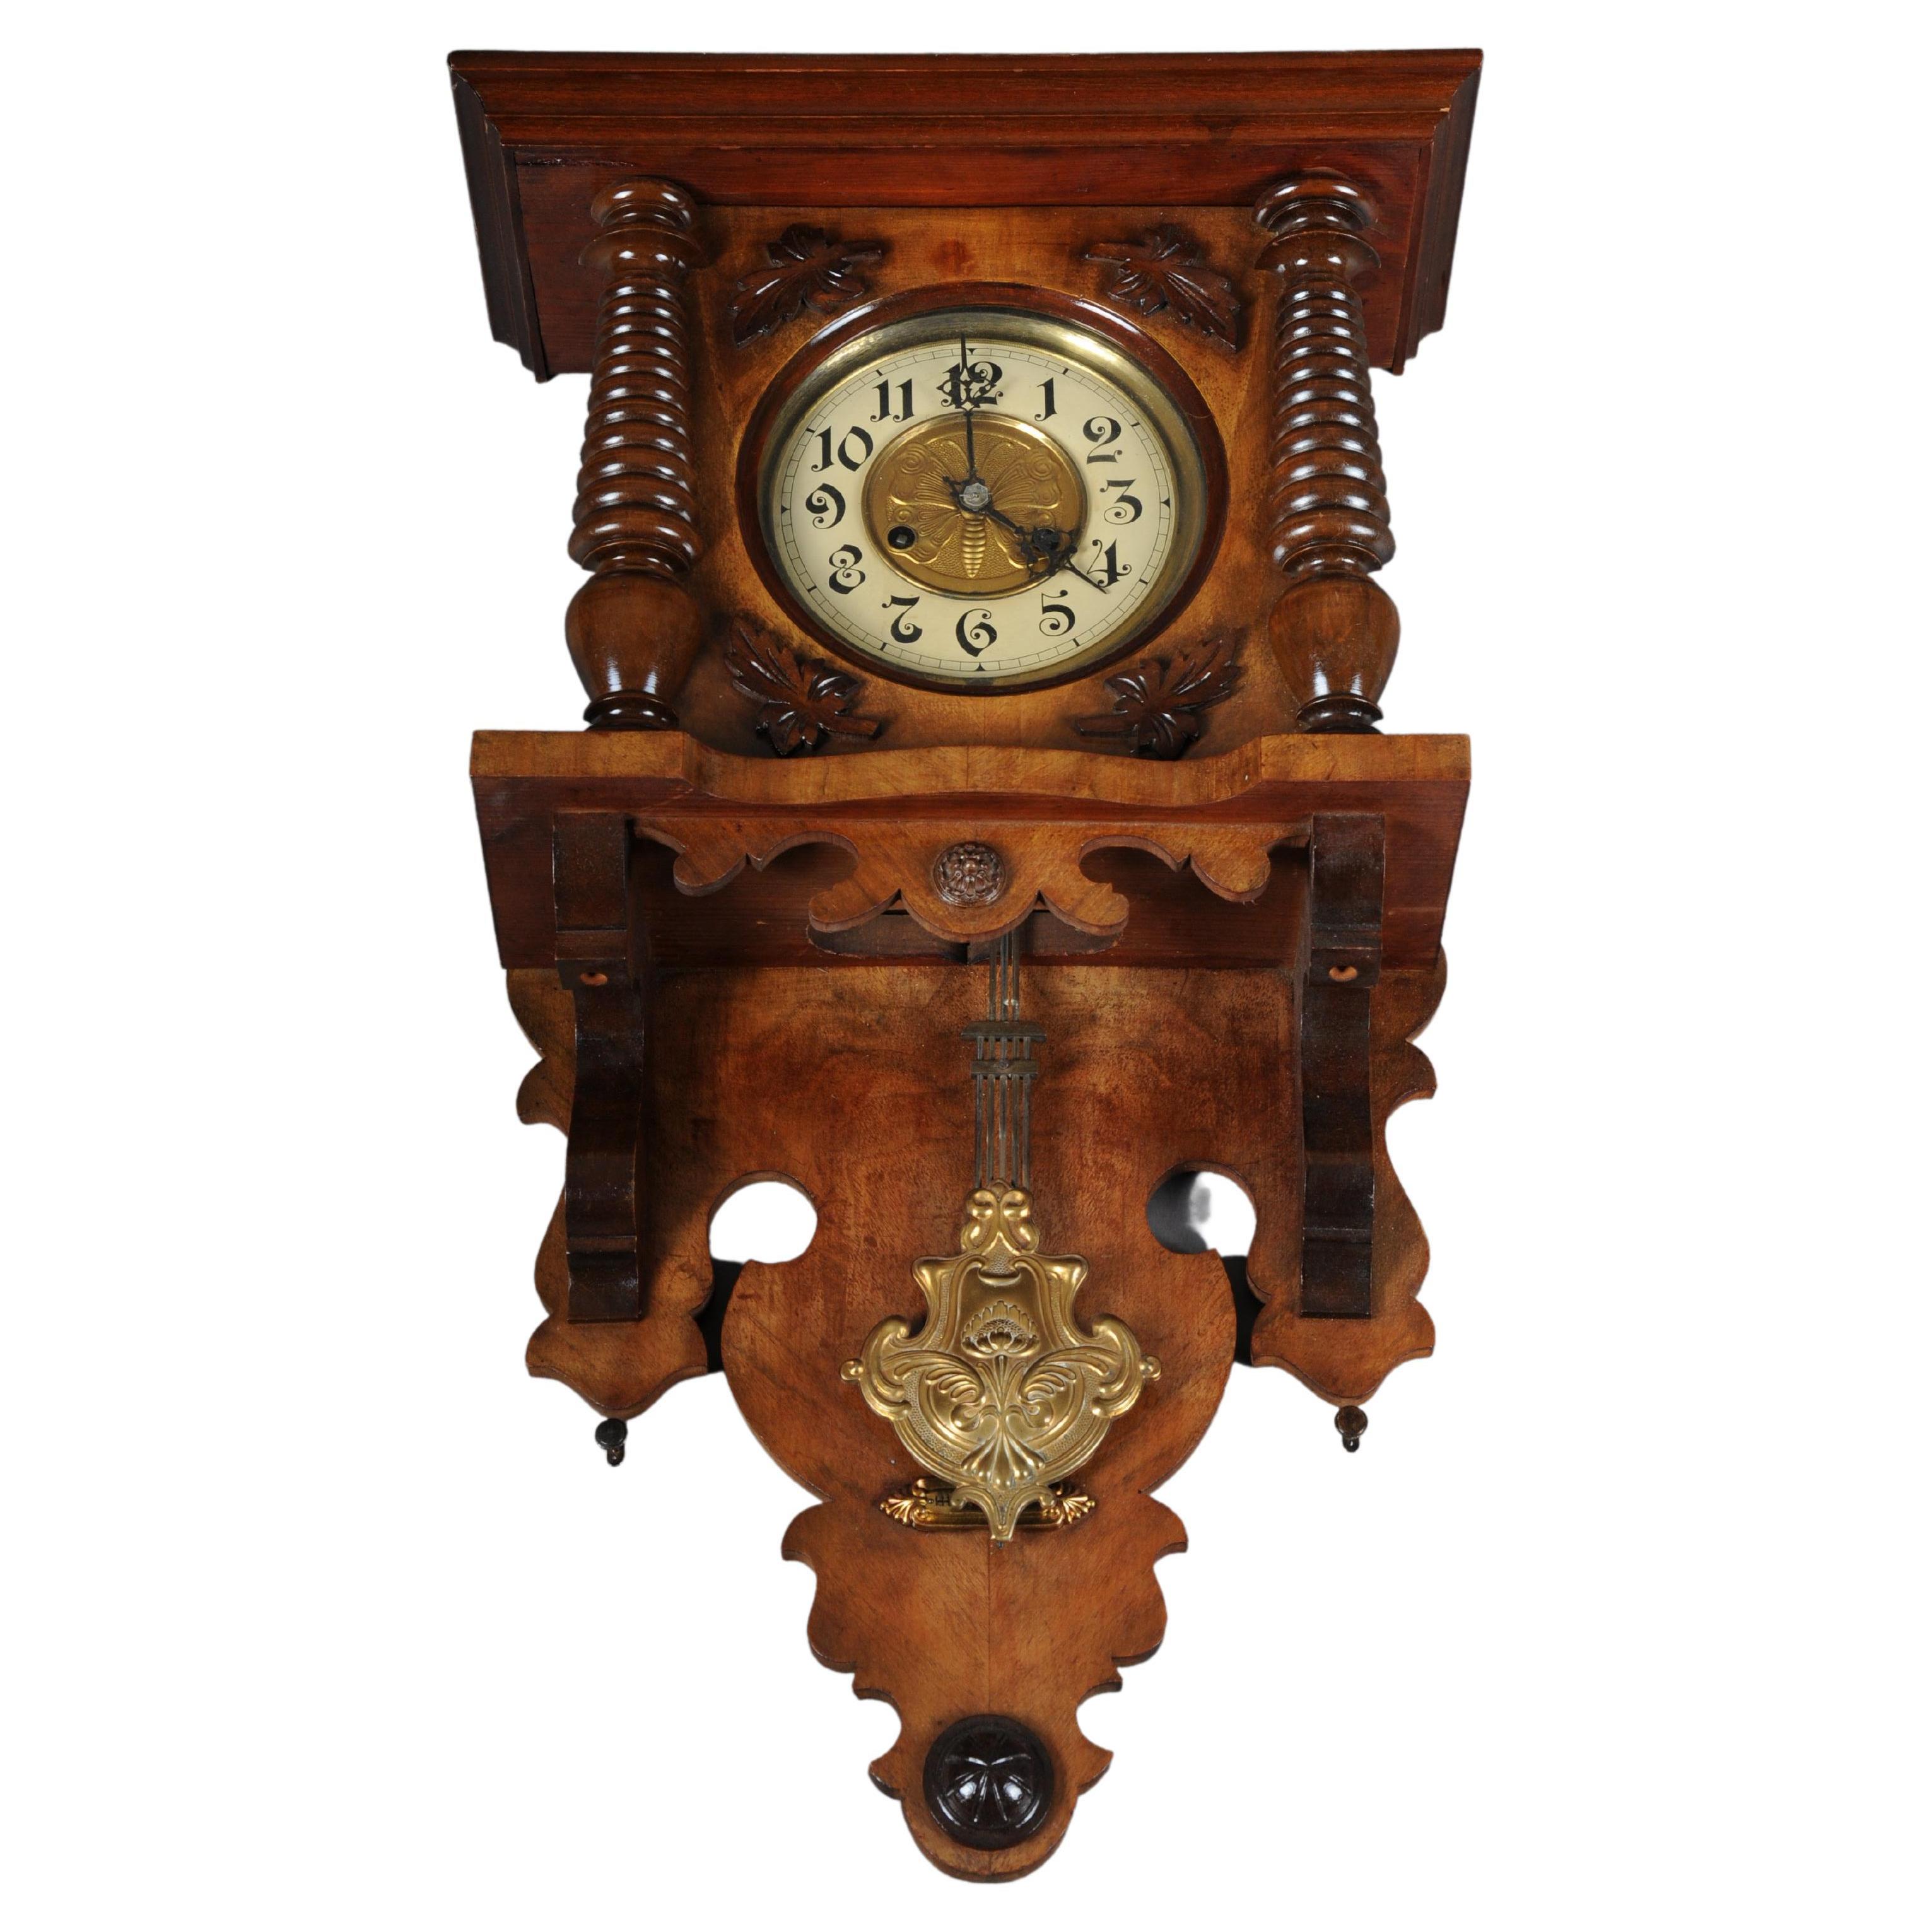 Horloge murale/régulateur d'horlogerie ancienne trouvée datant d'environ 1880